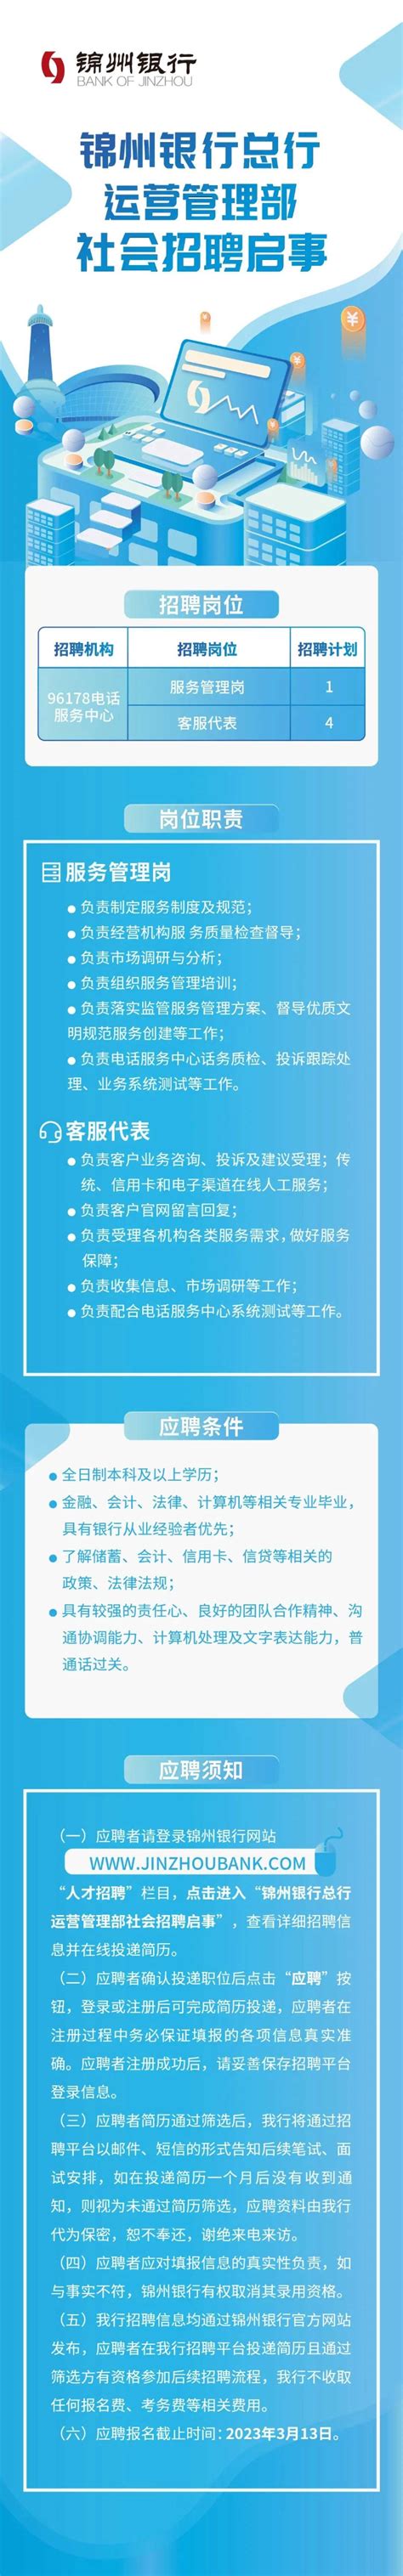 锦州银行总行运营管理部社会招聘启事_中国电子银行网